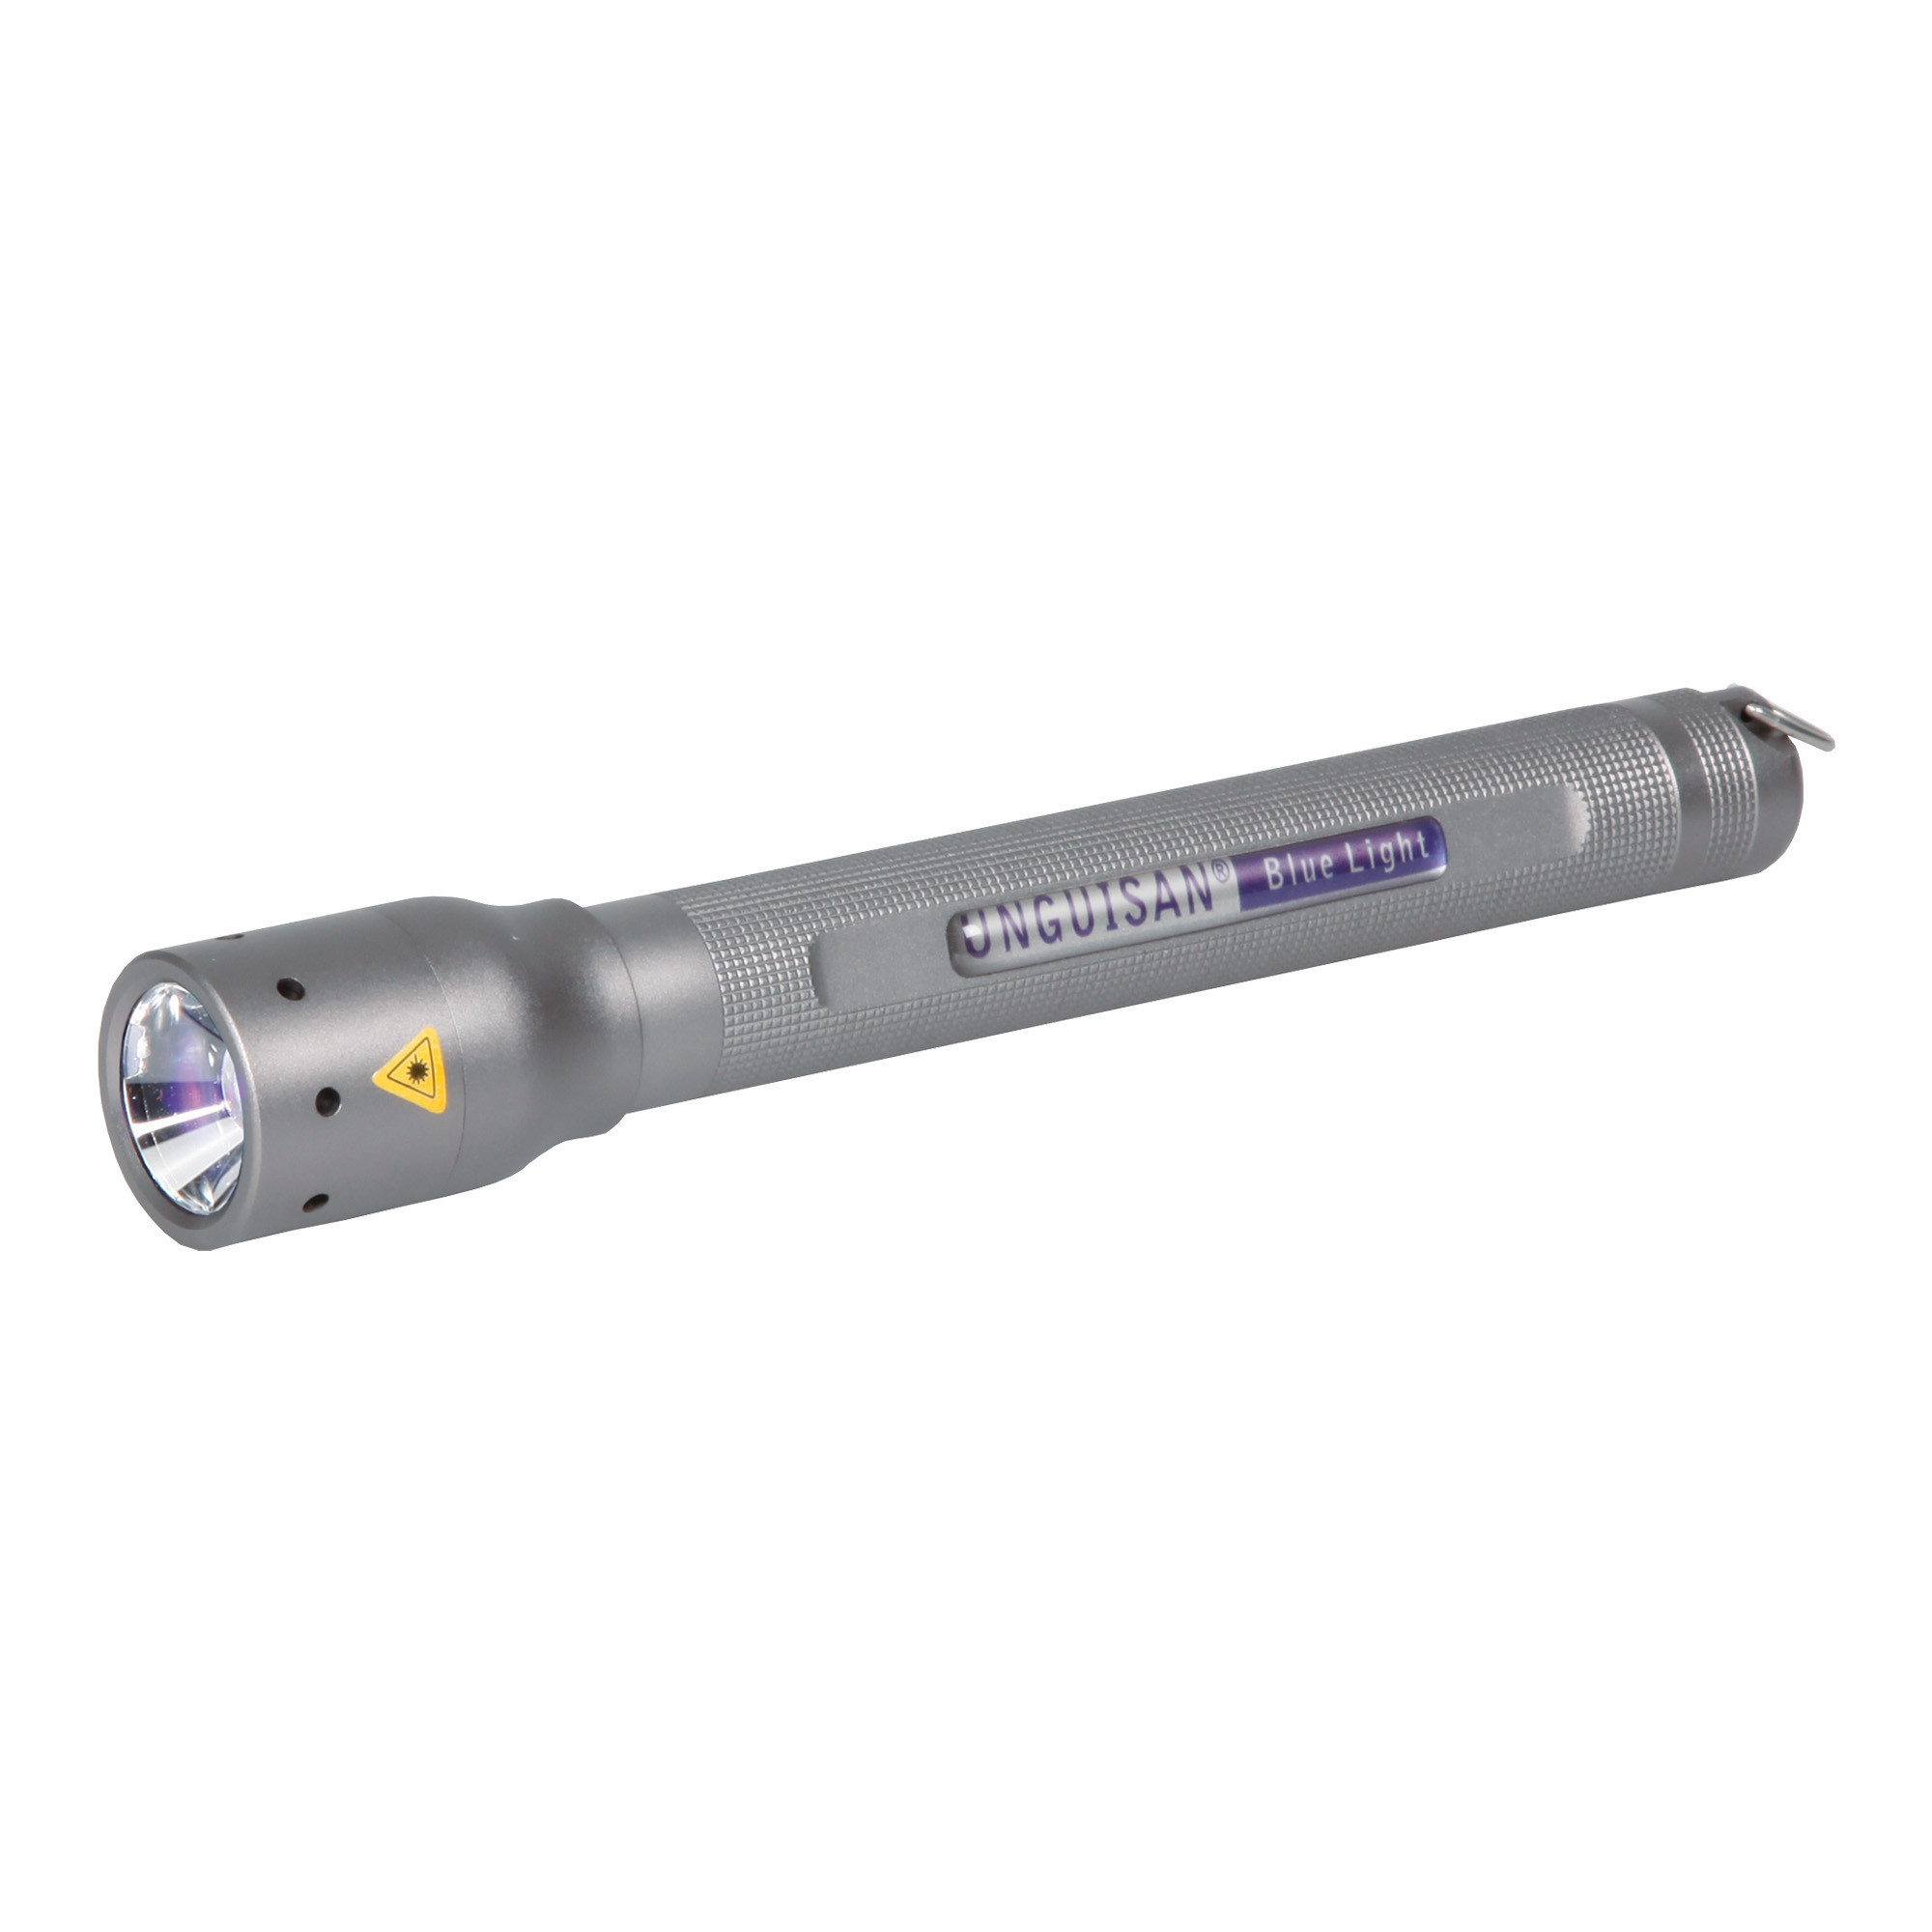 Kit complet de fixation et de correction passive avec lampe LED et gel composite dur Unguisan®.